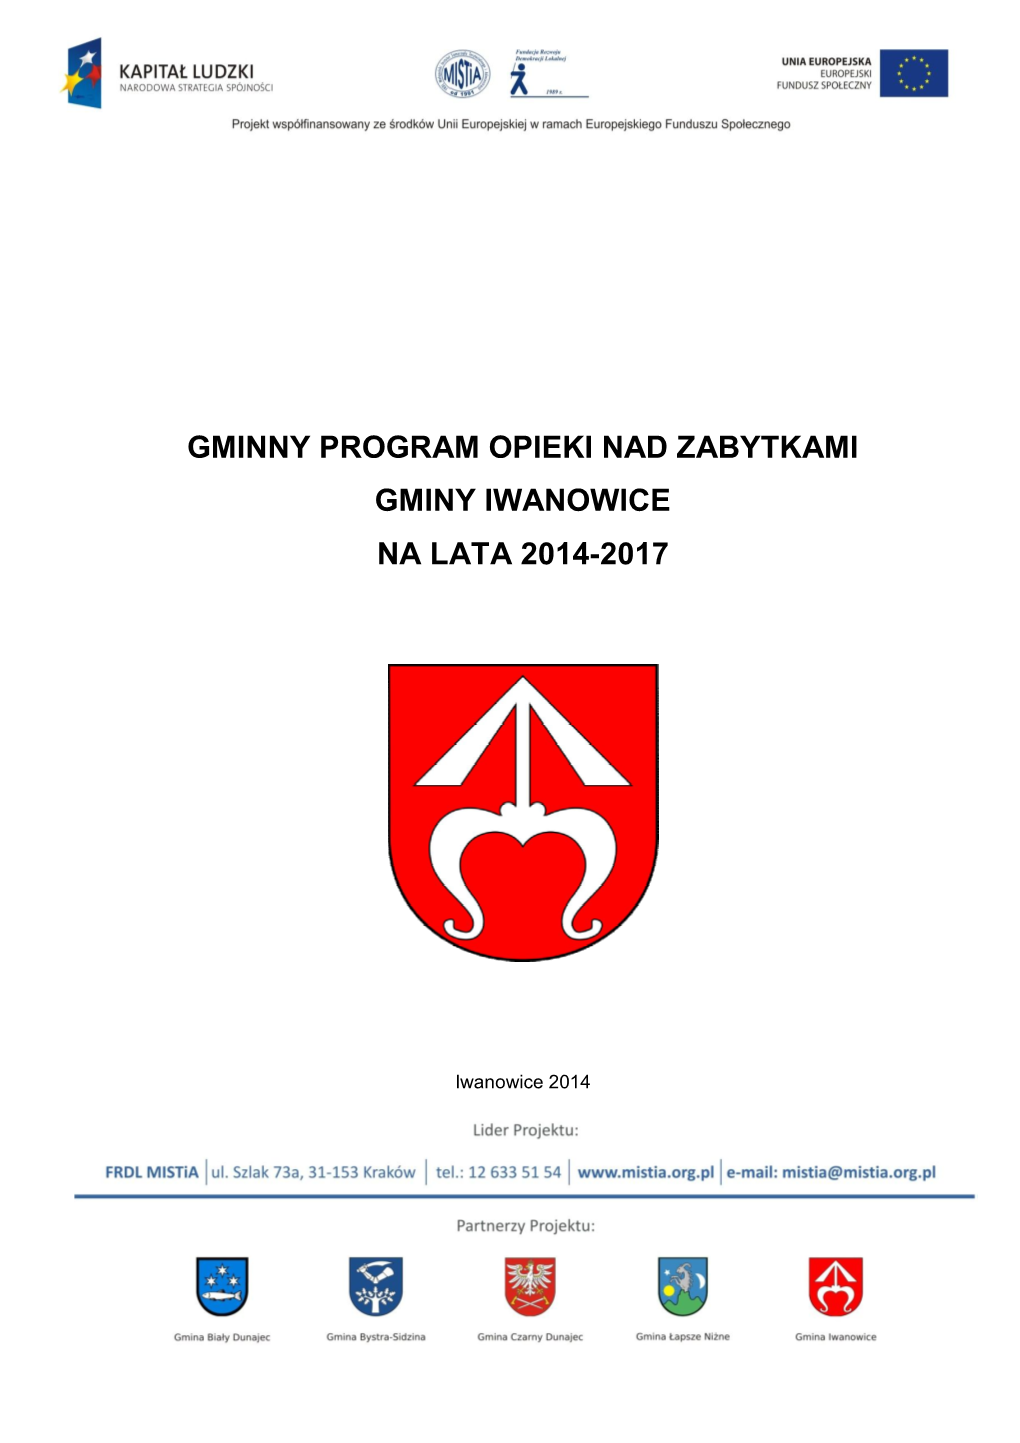 Gminny Program Opieki Nad Zabytkami Gminy Iwanowice Na Lata 2014-2017